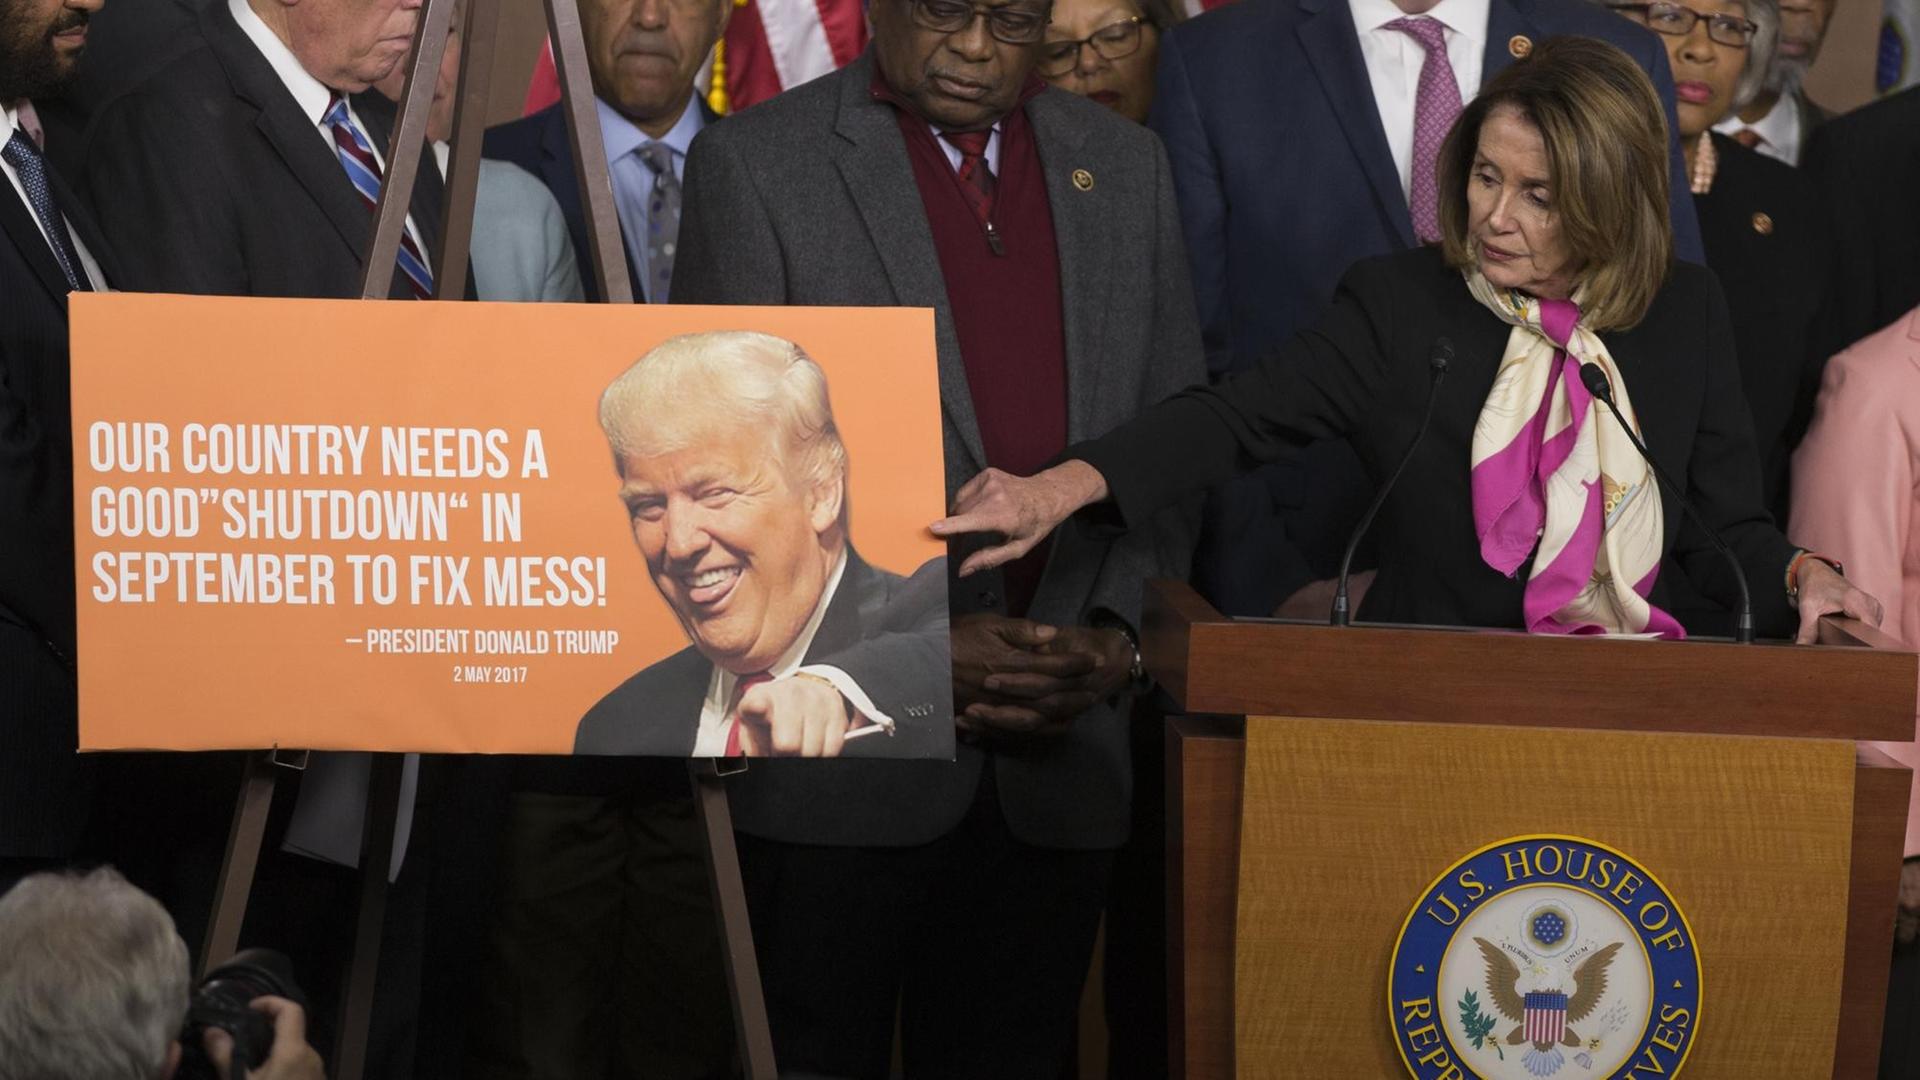 Nancy Pelosi steht an einem Podest im US-Kongress und zeigt mit dem Finger auf ein Plakat, dass einen Tweet des US-Präsidenten Donald Trump abbildet: "Our county needs a good 'shutdown' in September to fix mess!"